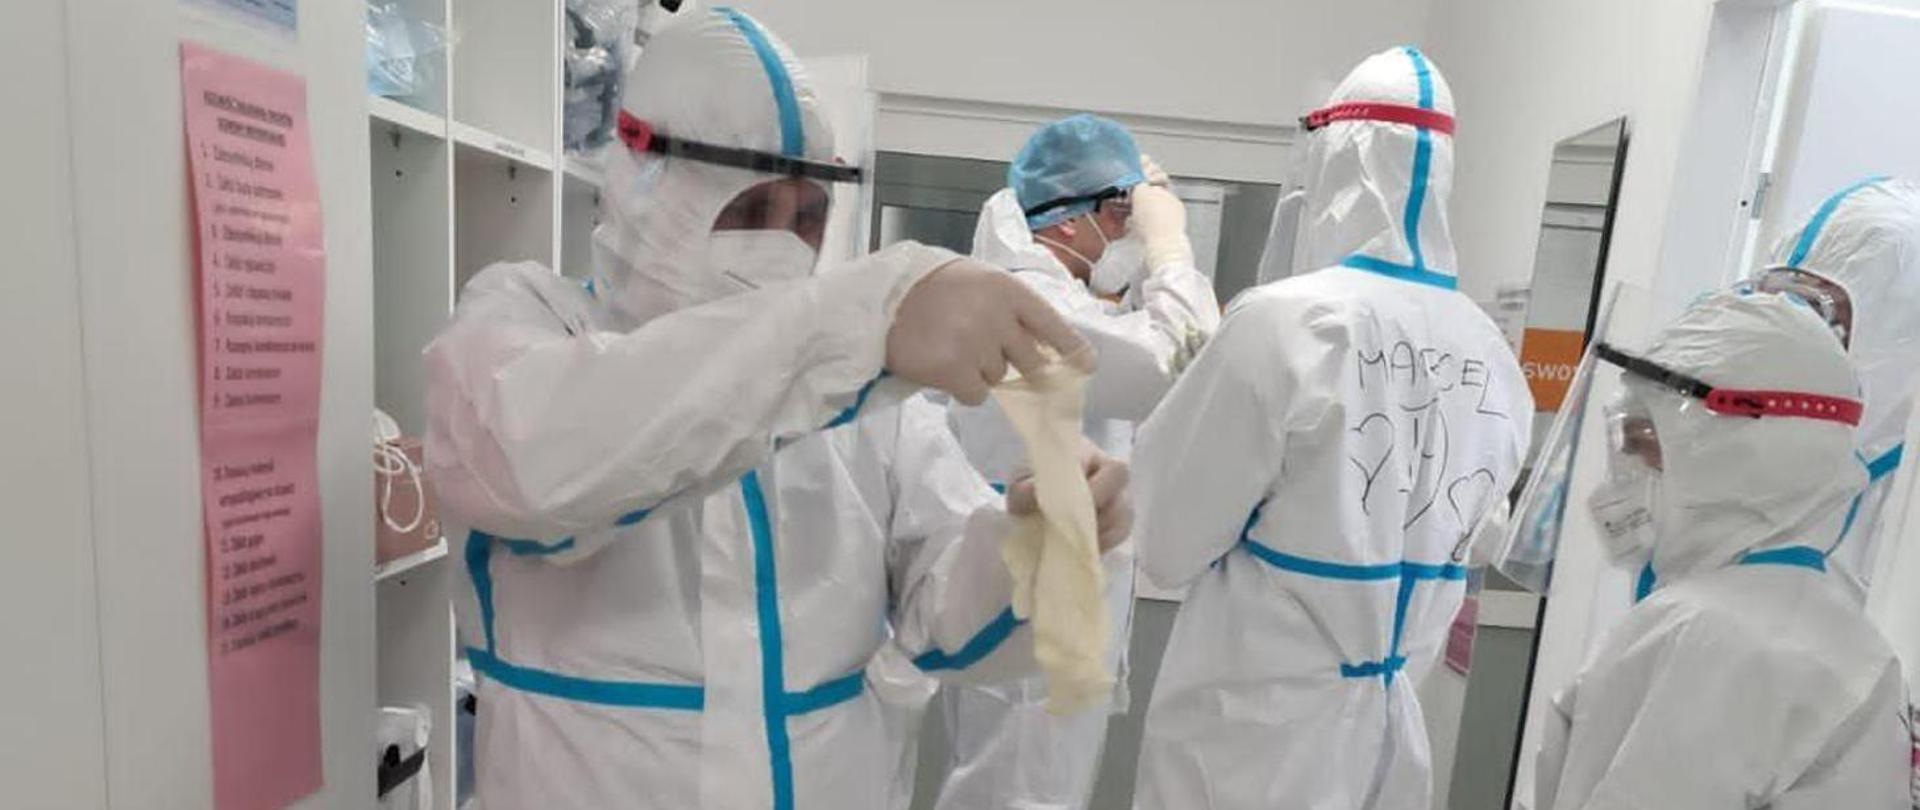 Zdjęcie przedstawia ratowników medycznych ubranych w białe, całościowe ubrania ochronne na tle pomieszczenia medycznego gdzie ratownicy ubierają się do czynności służbowych. Na pierwszym planie ratownik ubierający rękawice jednorazowe na dłonie